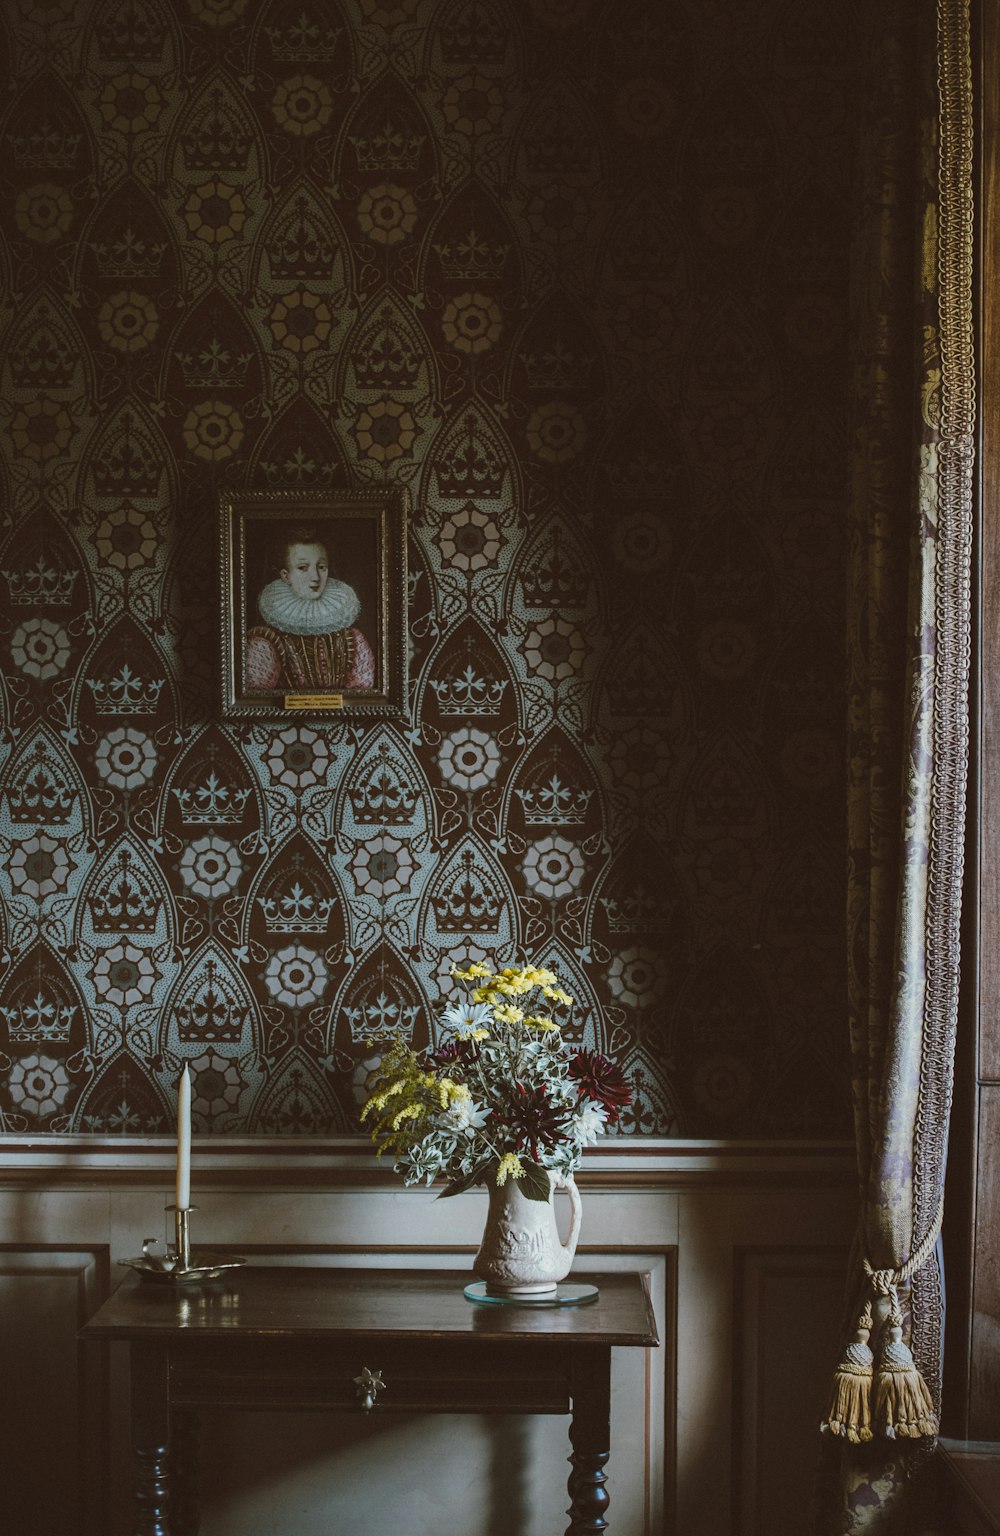 pintura colgada en la pared sobre arreglo floral en la mesa de la consola